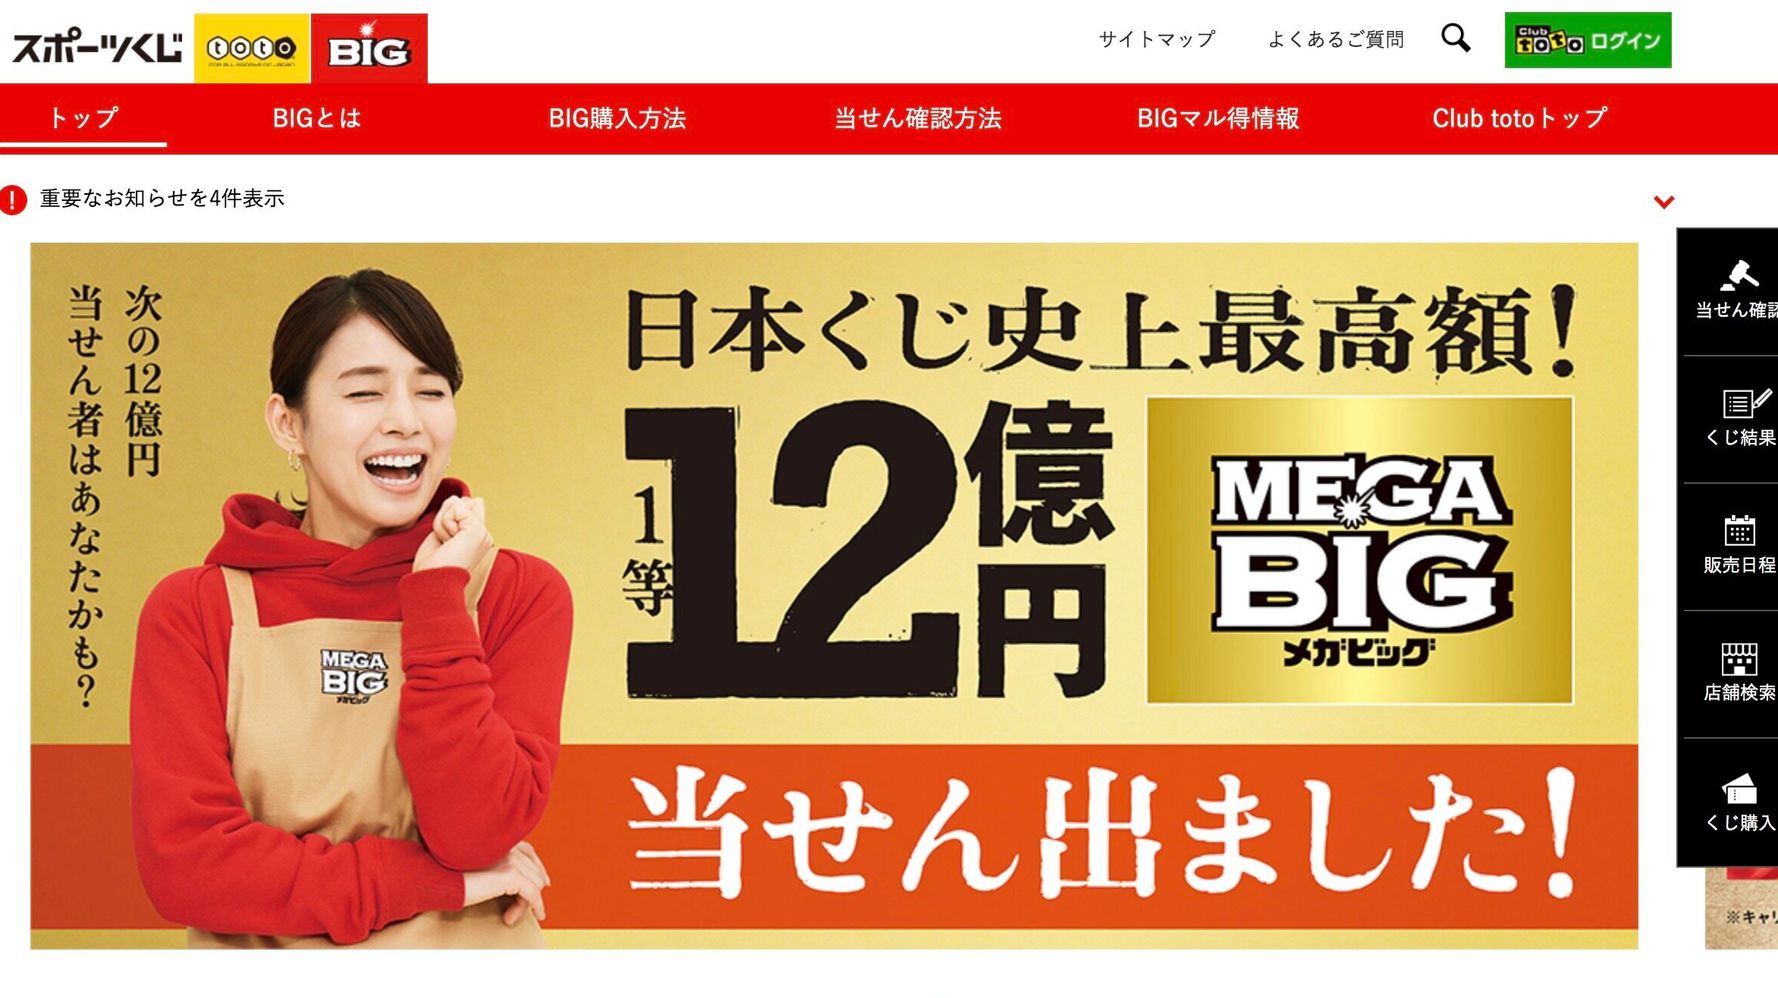 メガビッグ とは 日本のくじ史上最高額 12億円 ついに出る ハフポスト News